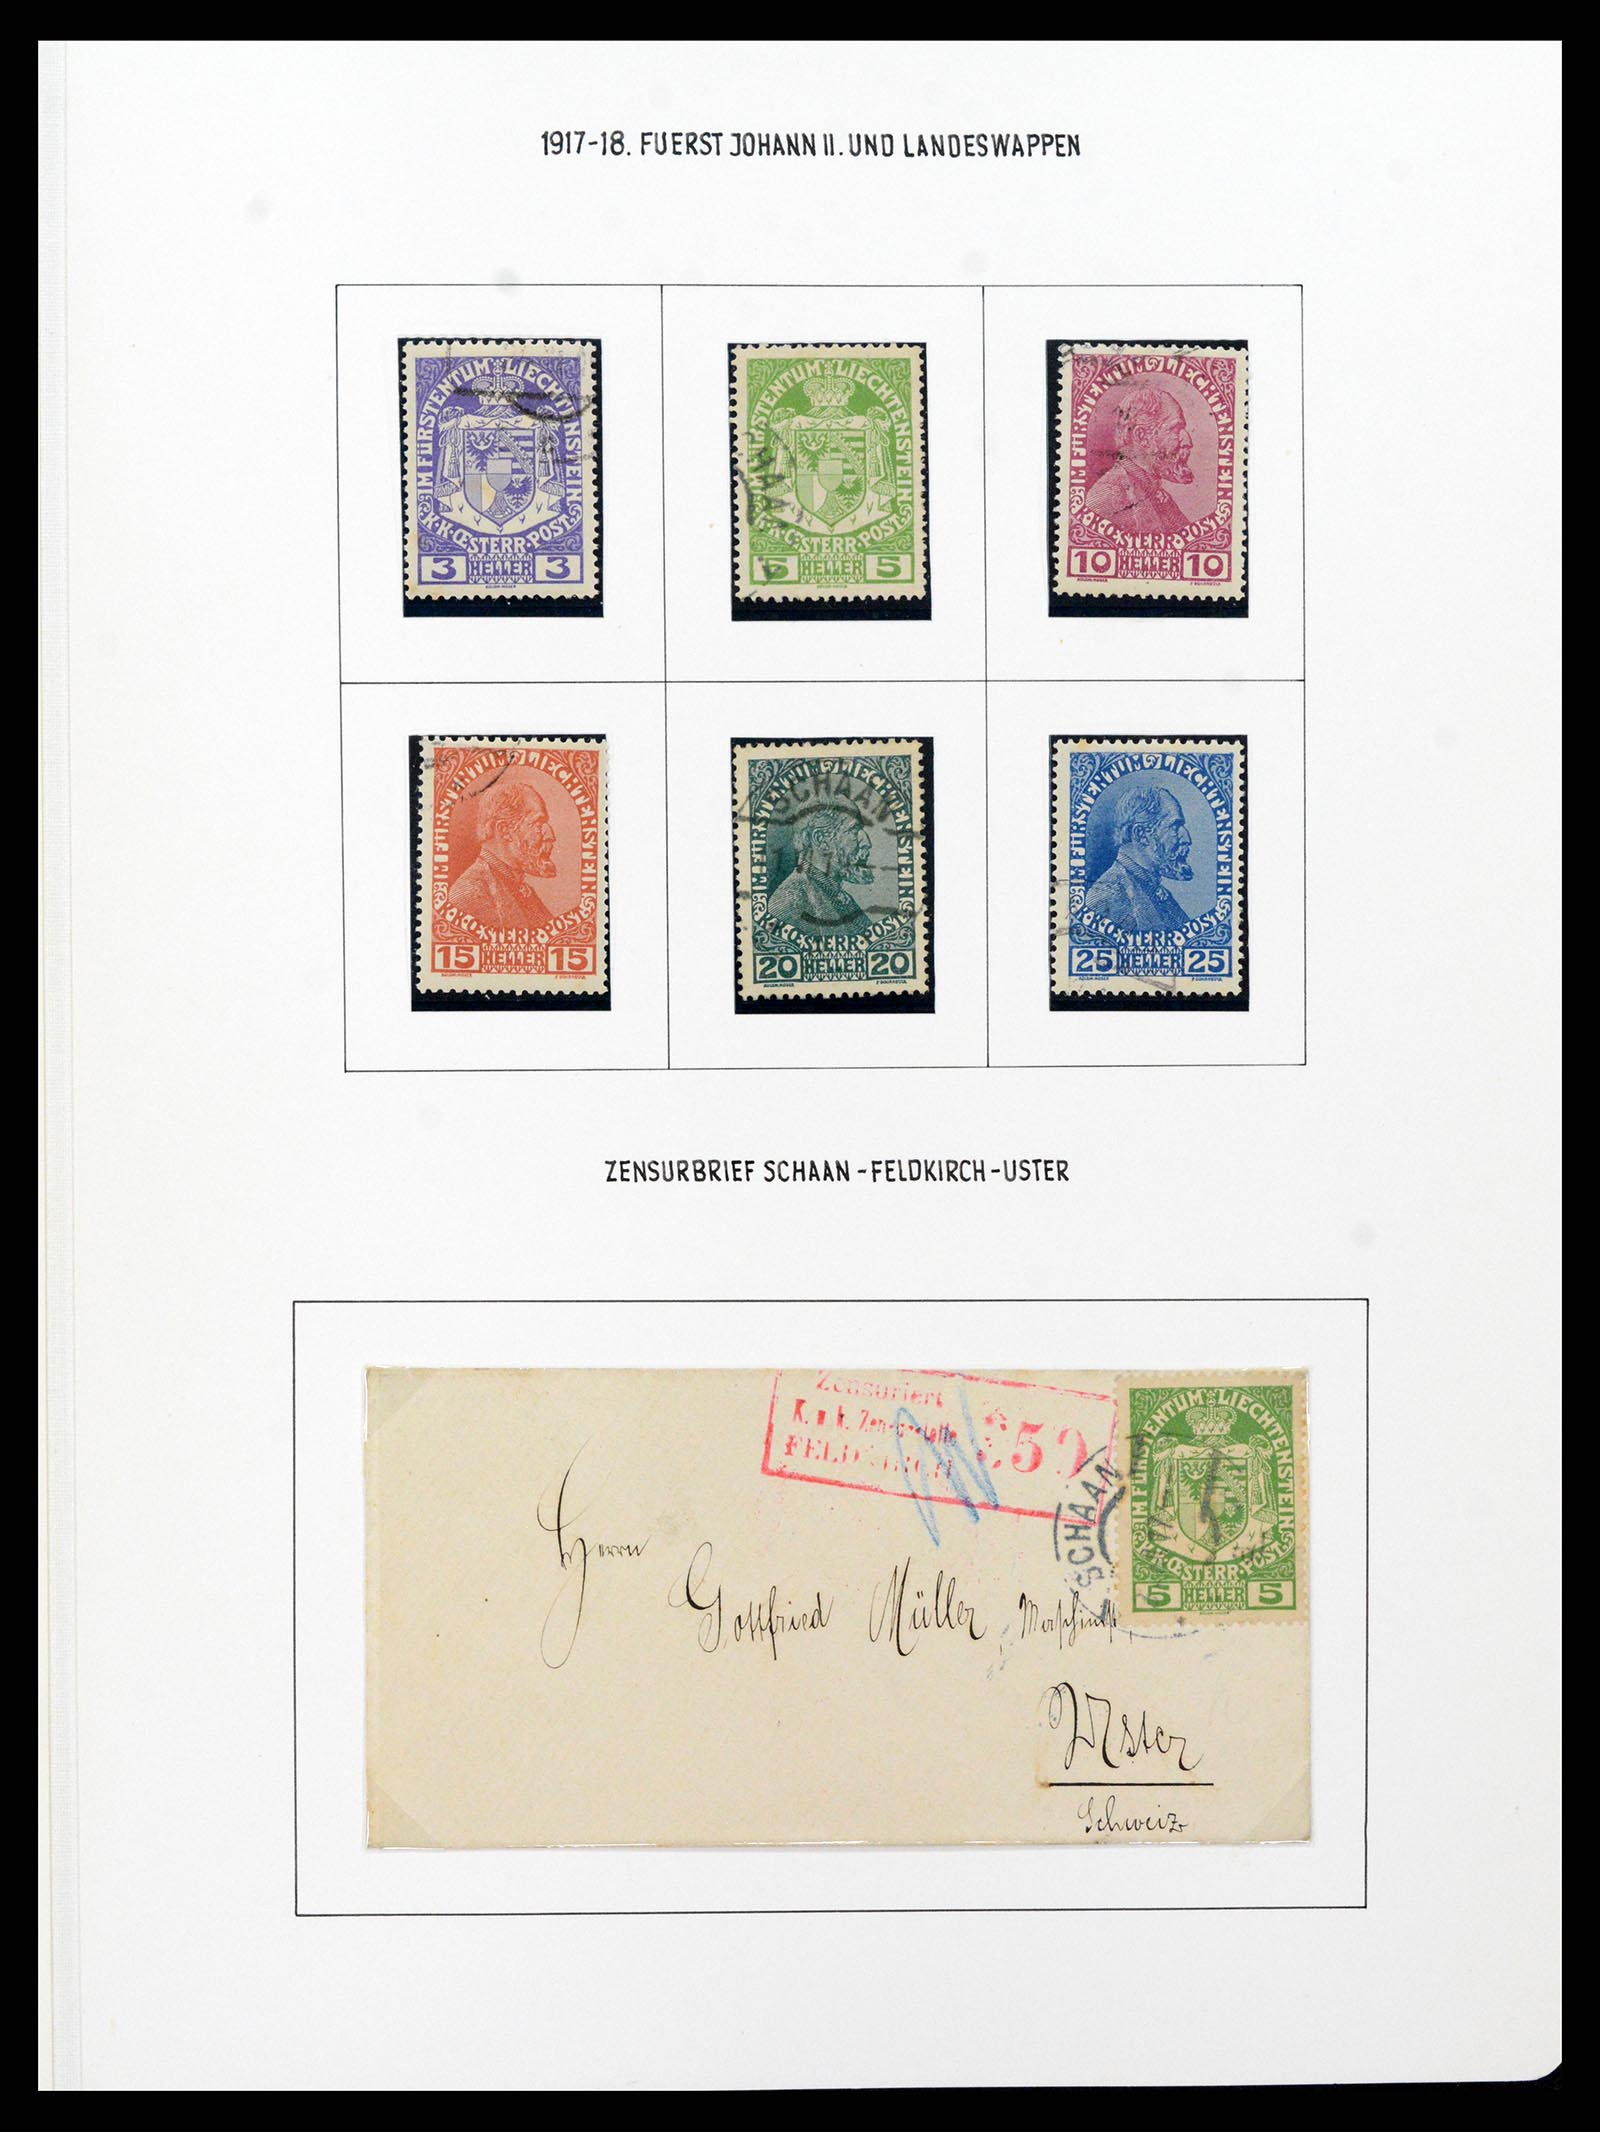 37150 0019 - Stamp collection 37150 Liechtenstein supercollection 1912-1962.